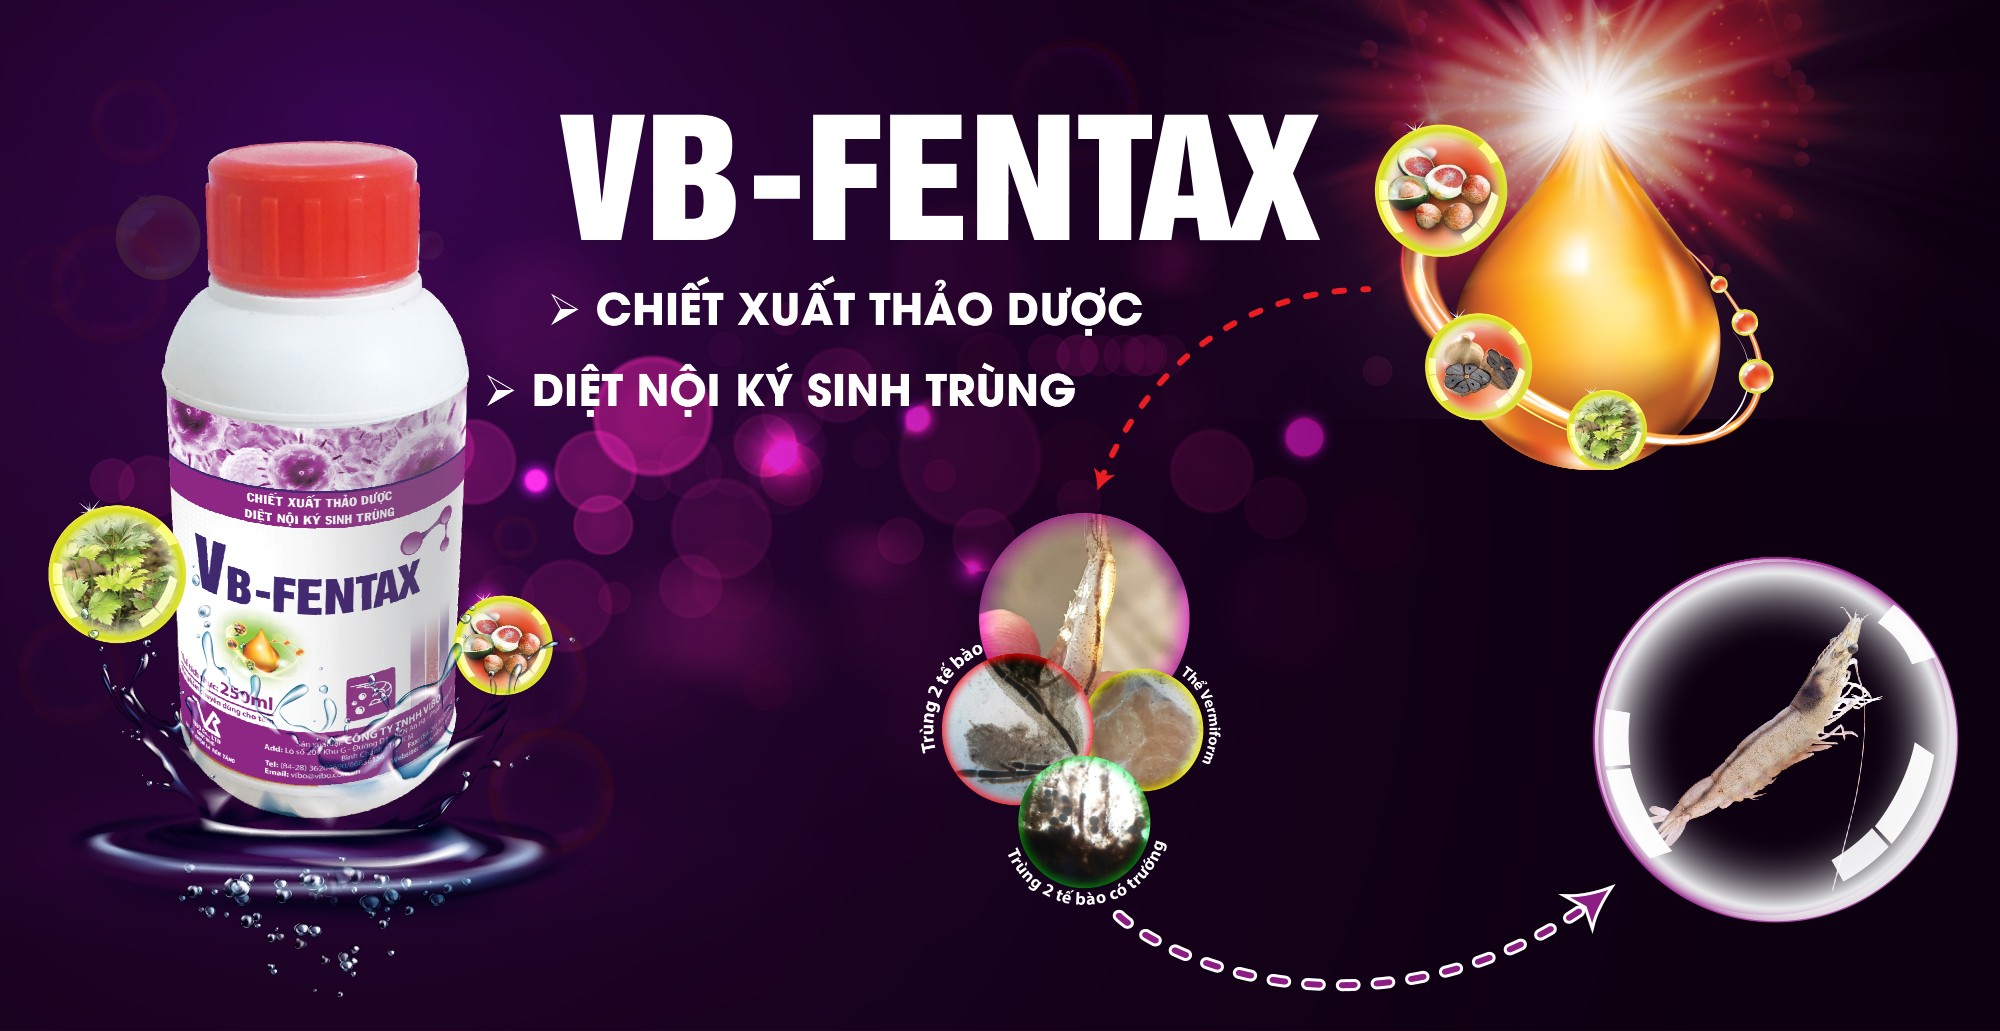 VB-FENTAX